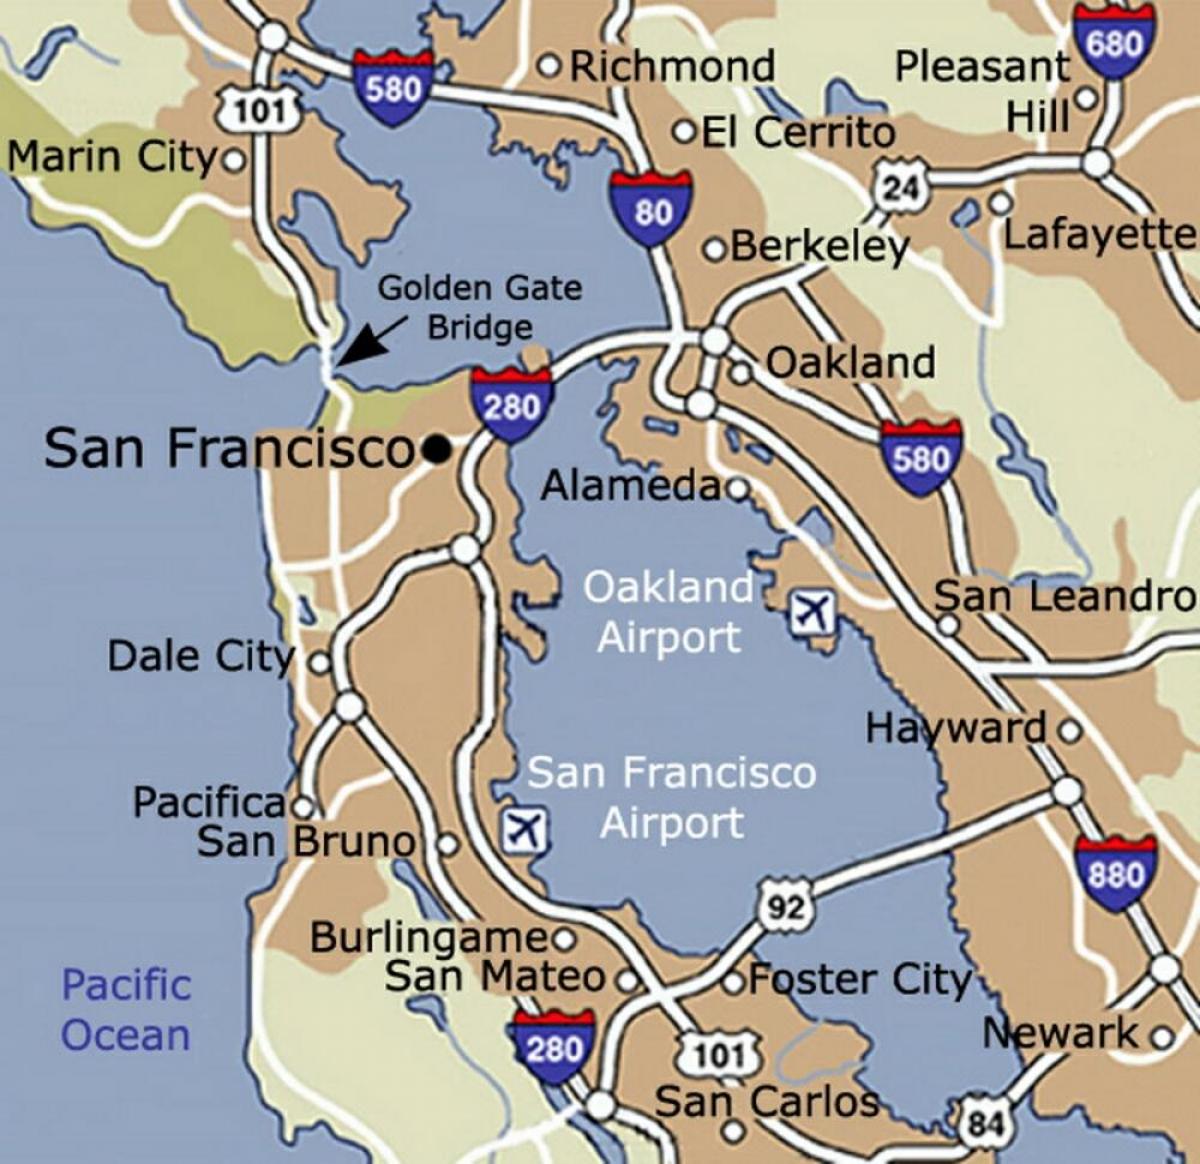 Karte von Flughafen San Francisco und Umgebung